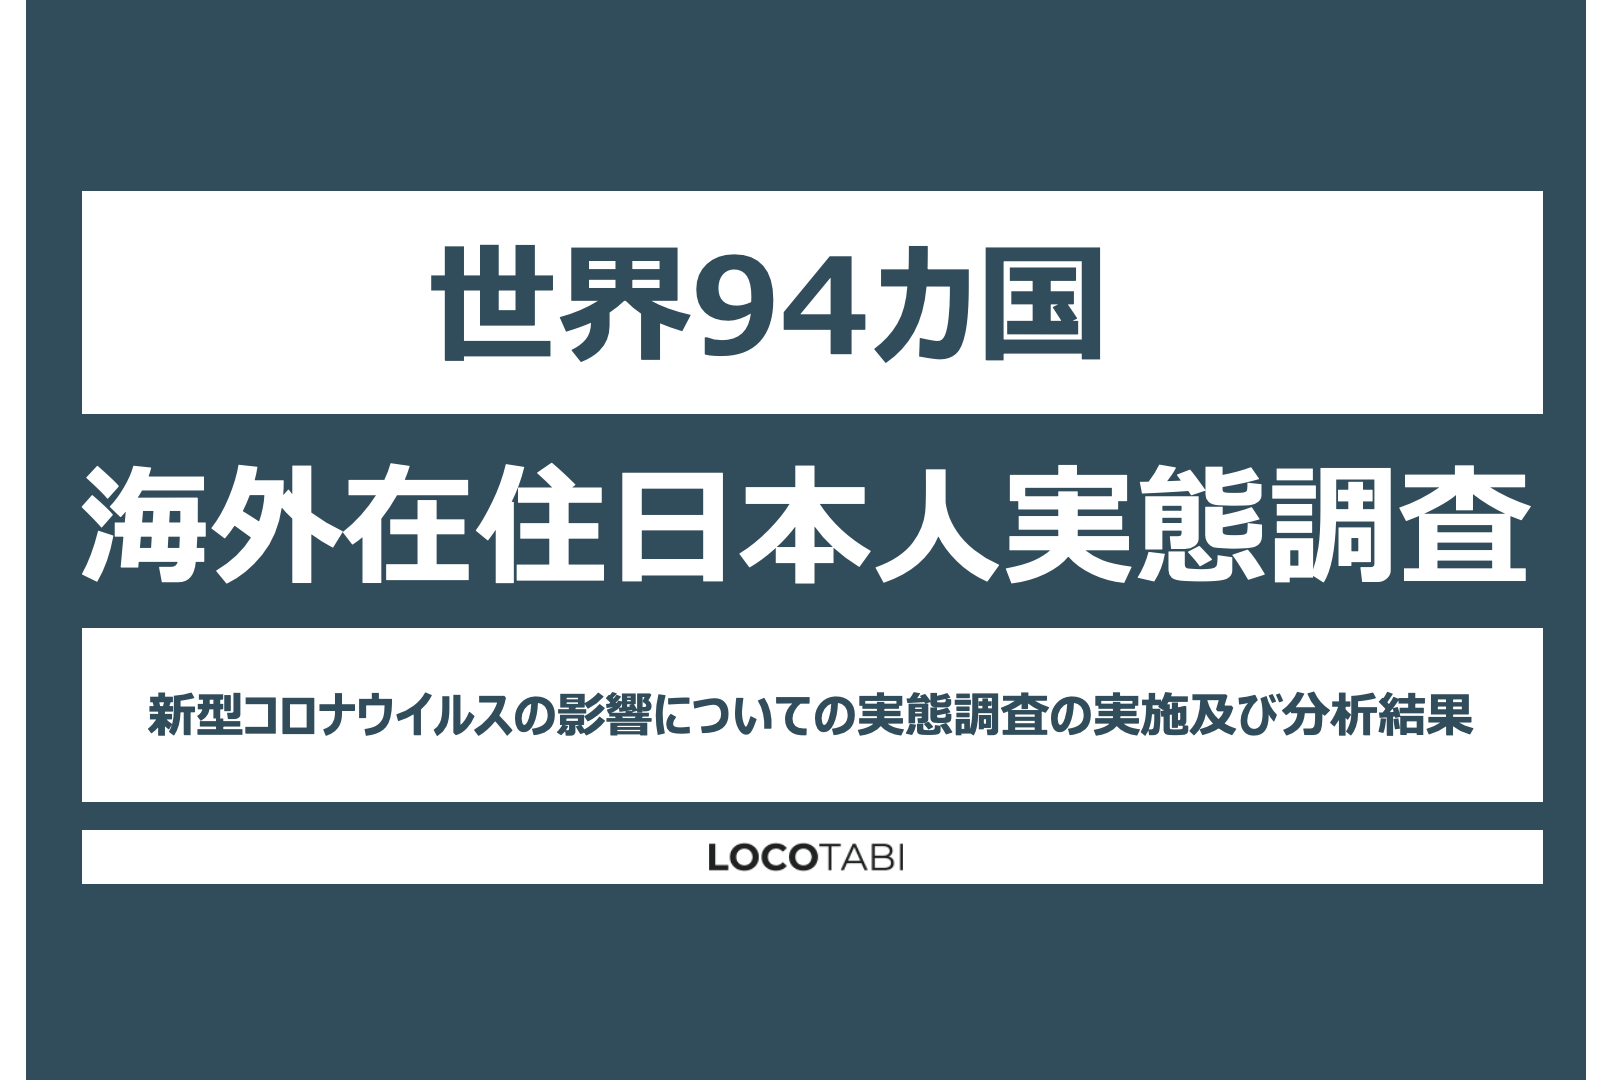 世界94カ国 海外在住日本人の実態調査 新型コロナが与えた影響とリアルな実情分析レポート ロコタビのプレスリリース